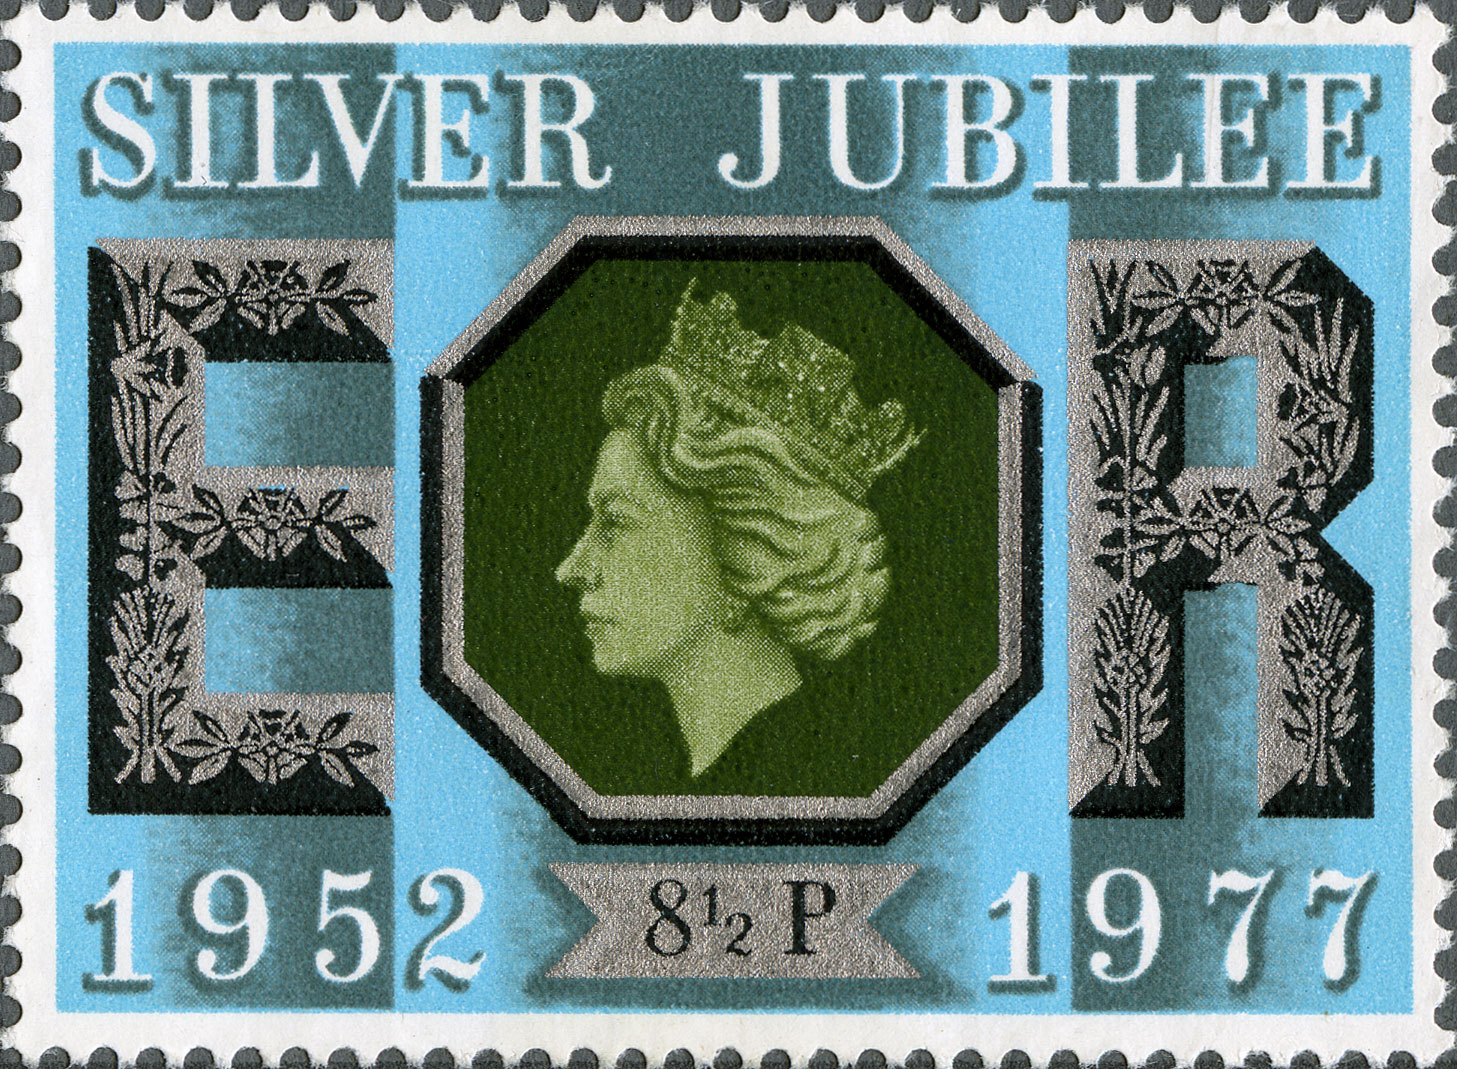 8½p, Silver Jubilee